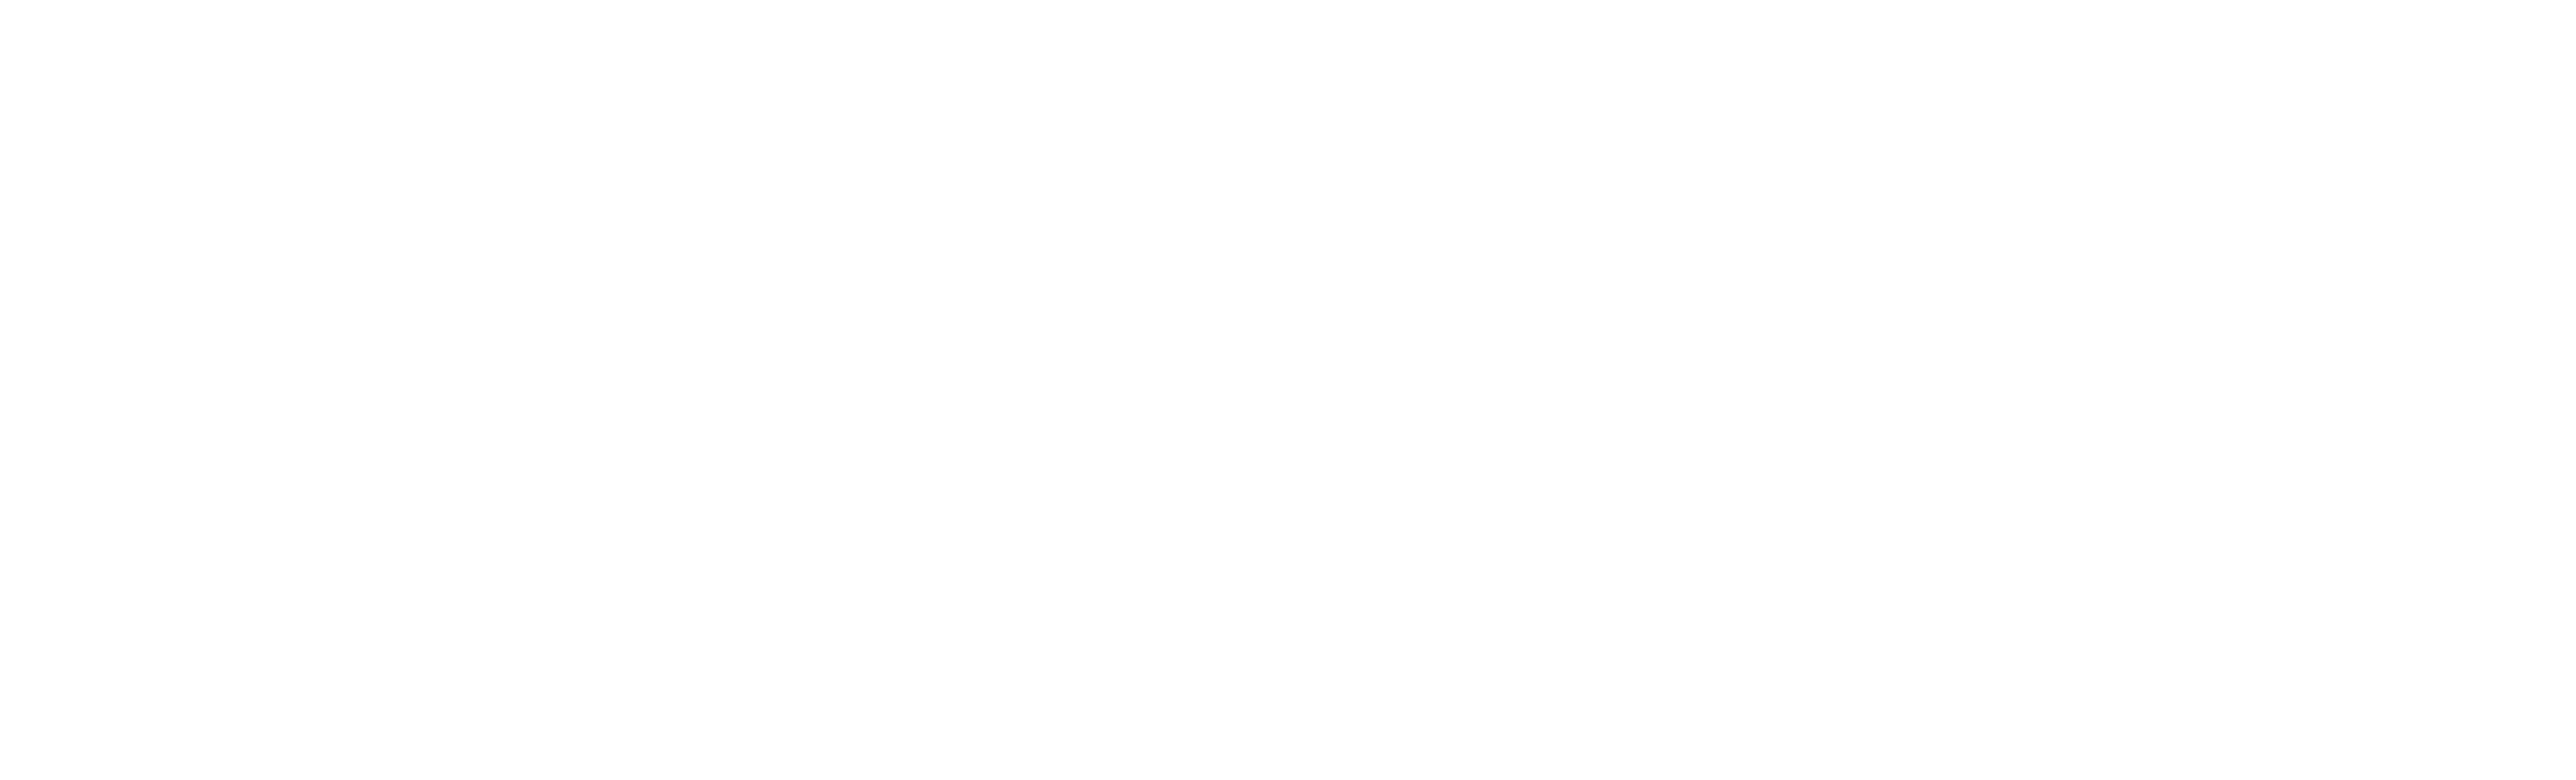 Vodafone logo in white